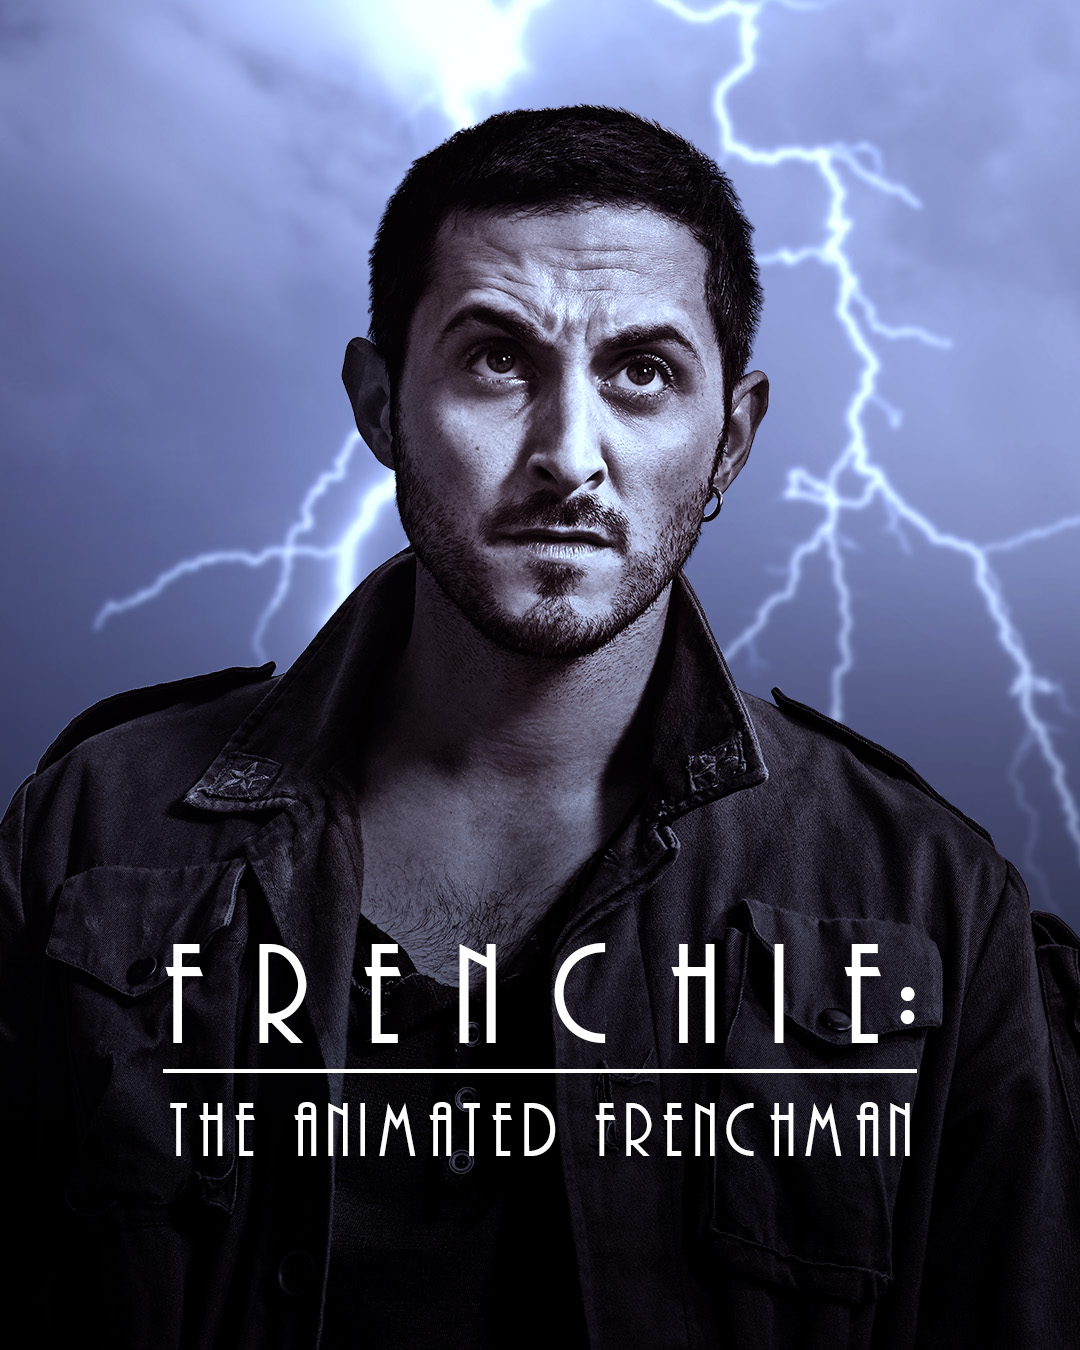 Frenchie/Mask of the Phantasm